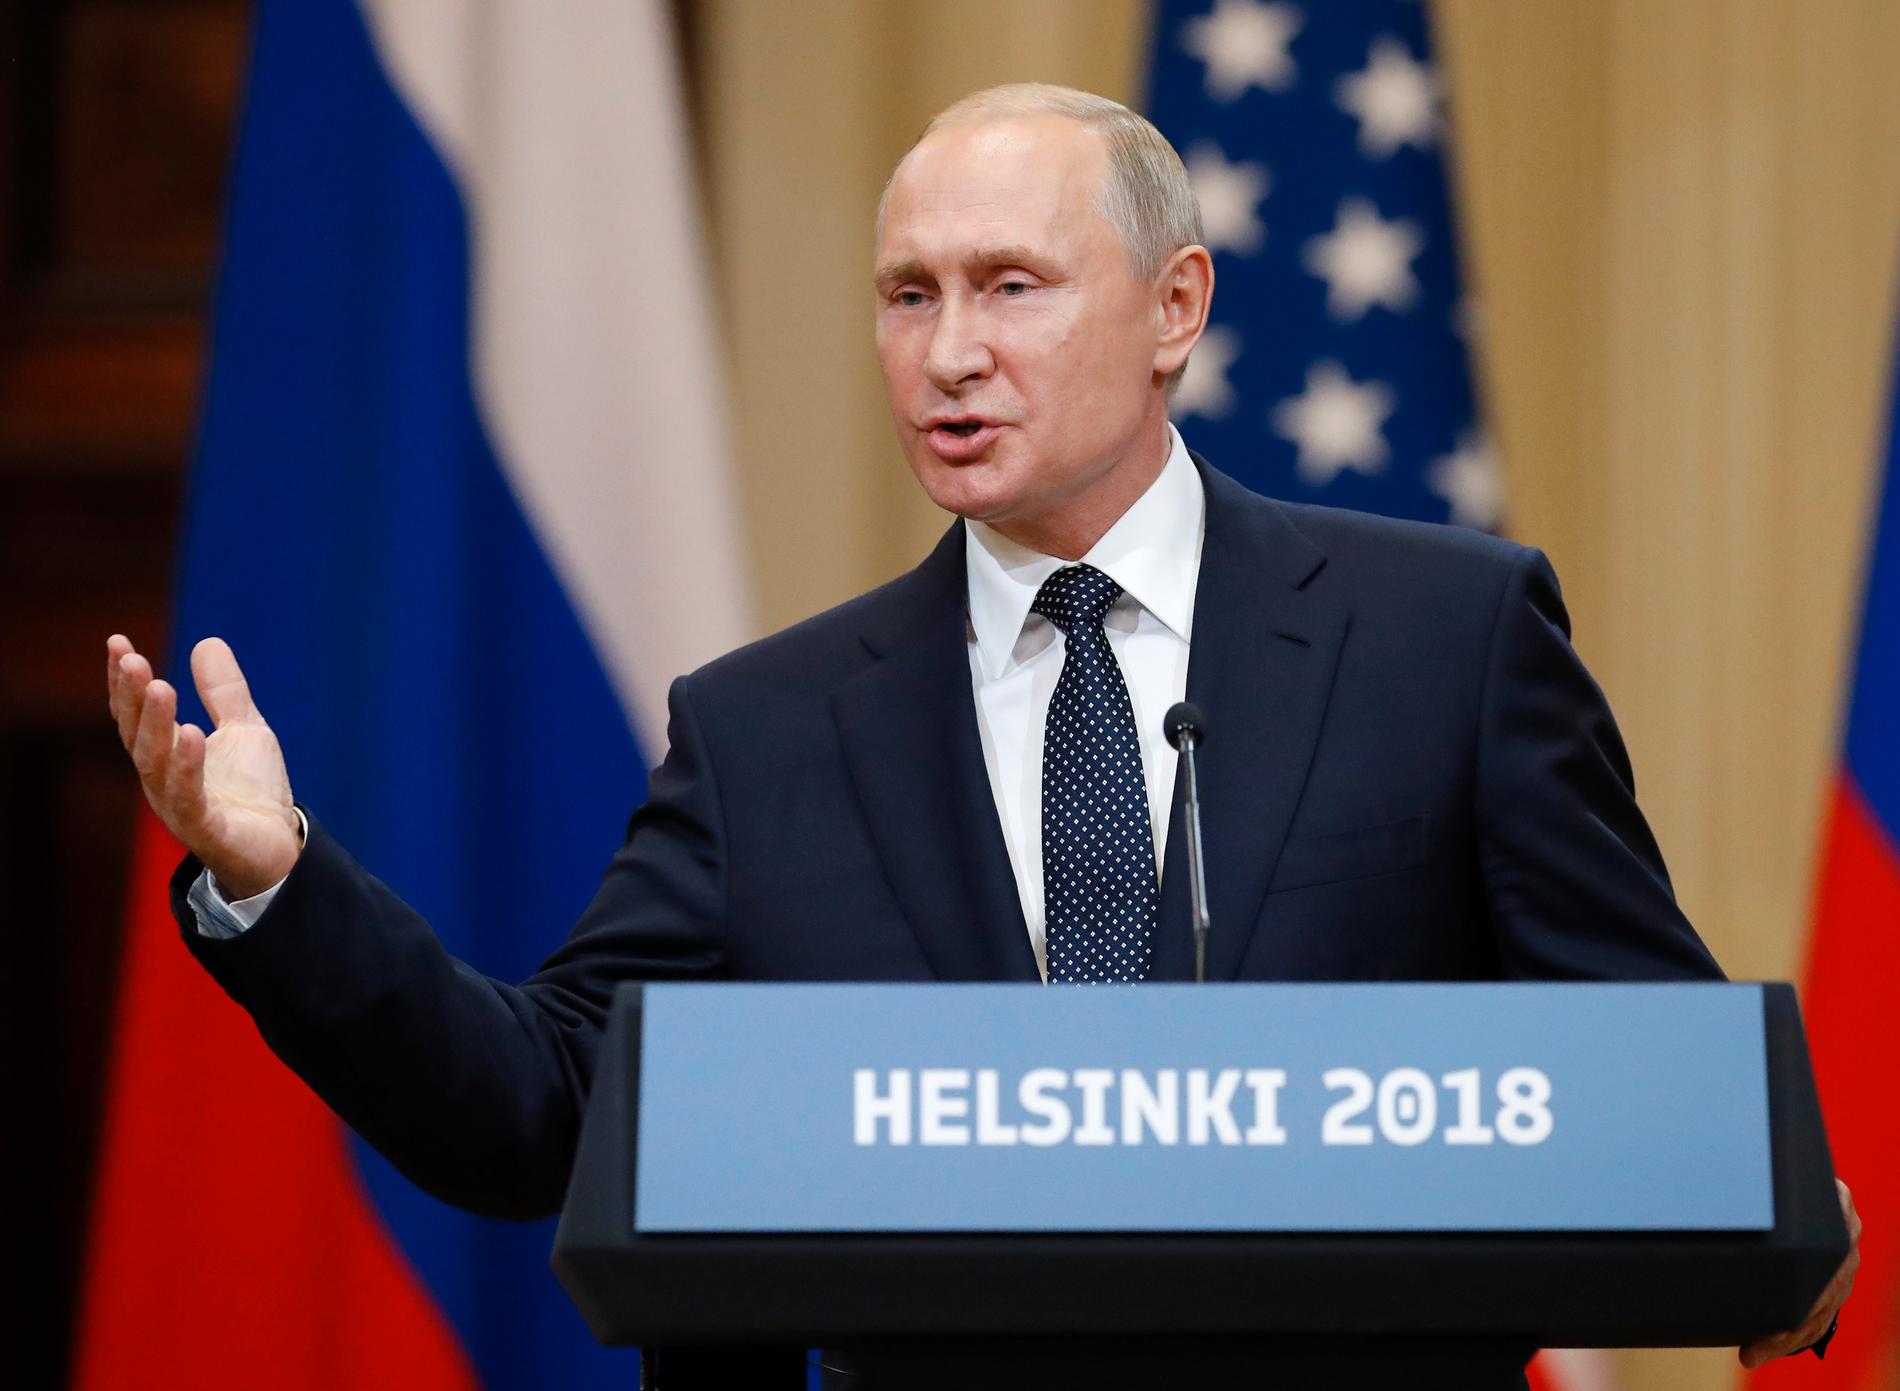 Rysslands president Vladimir Putin framstod som den starkare parten under dagens presskonferens i Helsingfors, enligt svenska Rysslandsexperter.